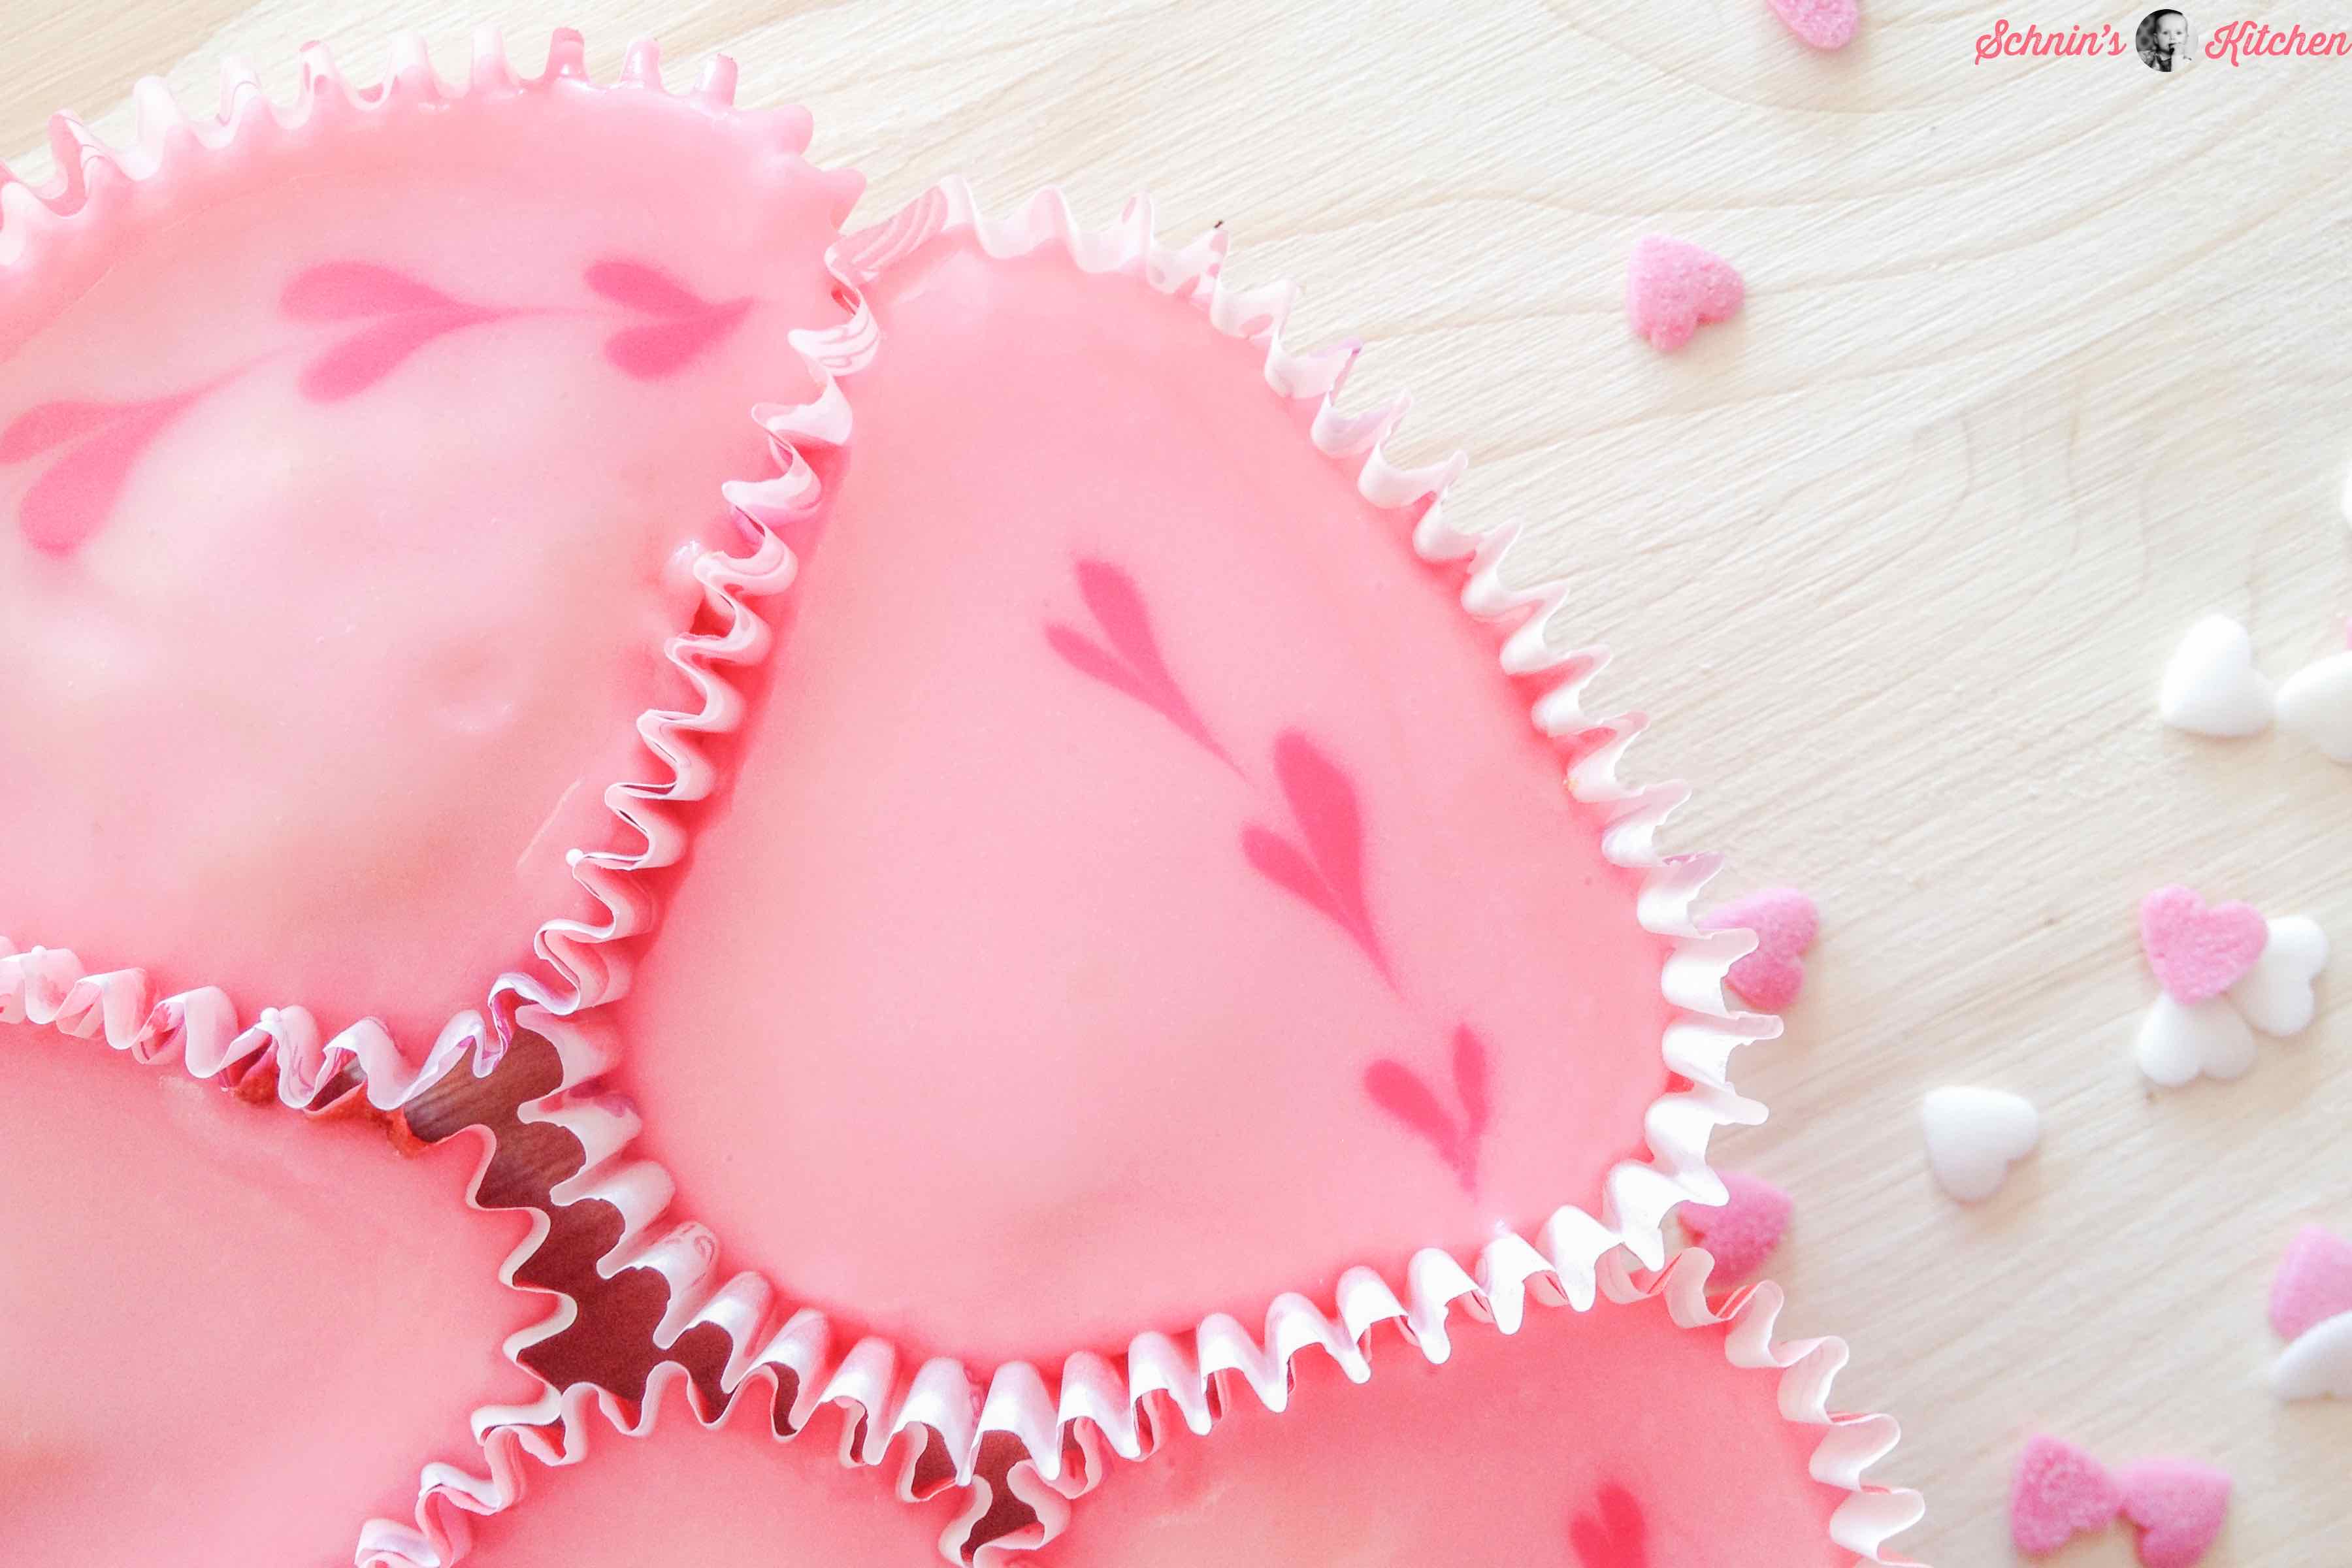 Cupcake-Herz-Kuchen für Valentinstag, Muttertag oder Hochzeit - www.schninskitchen.de